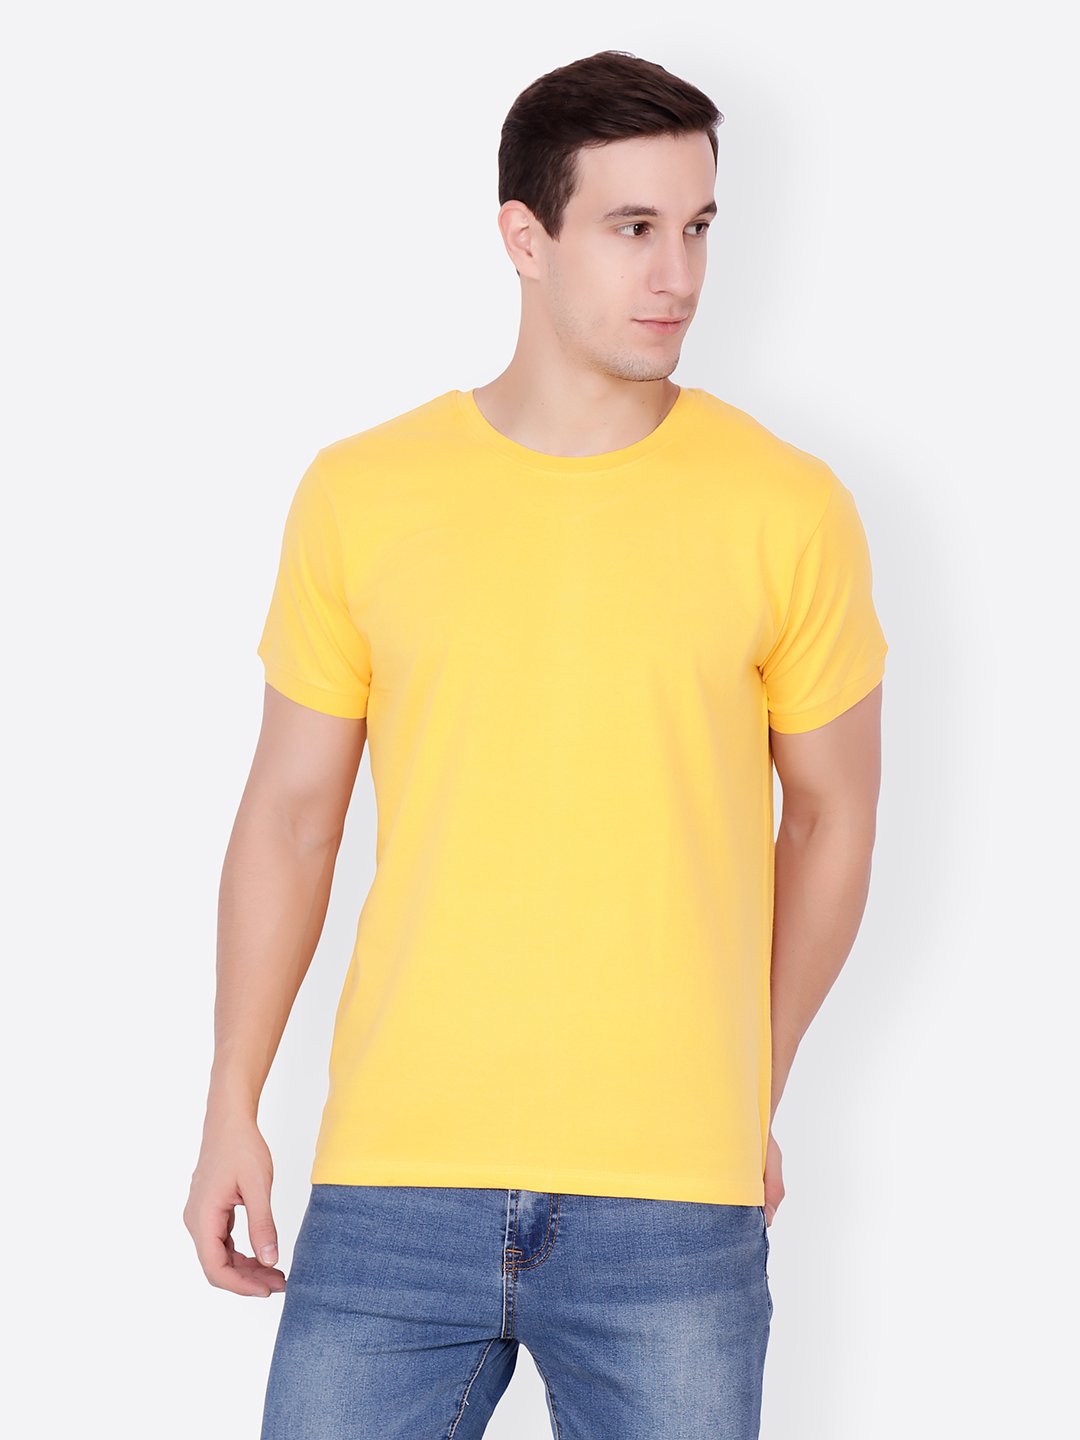 Mens_tshirt_100_yellow_2.jpg